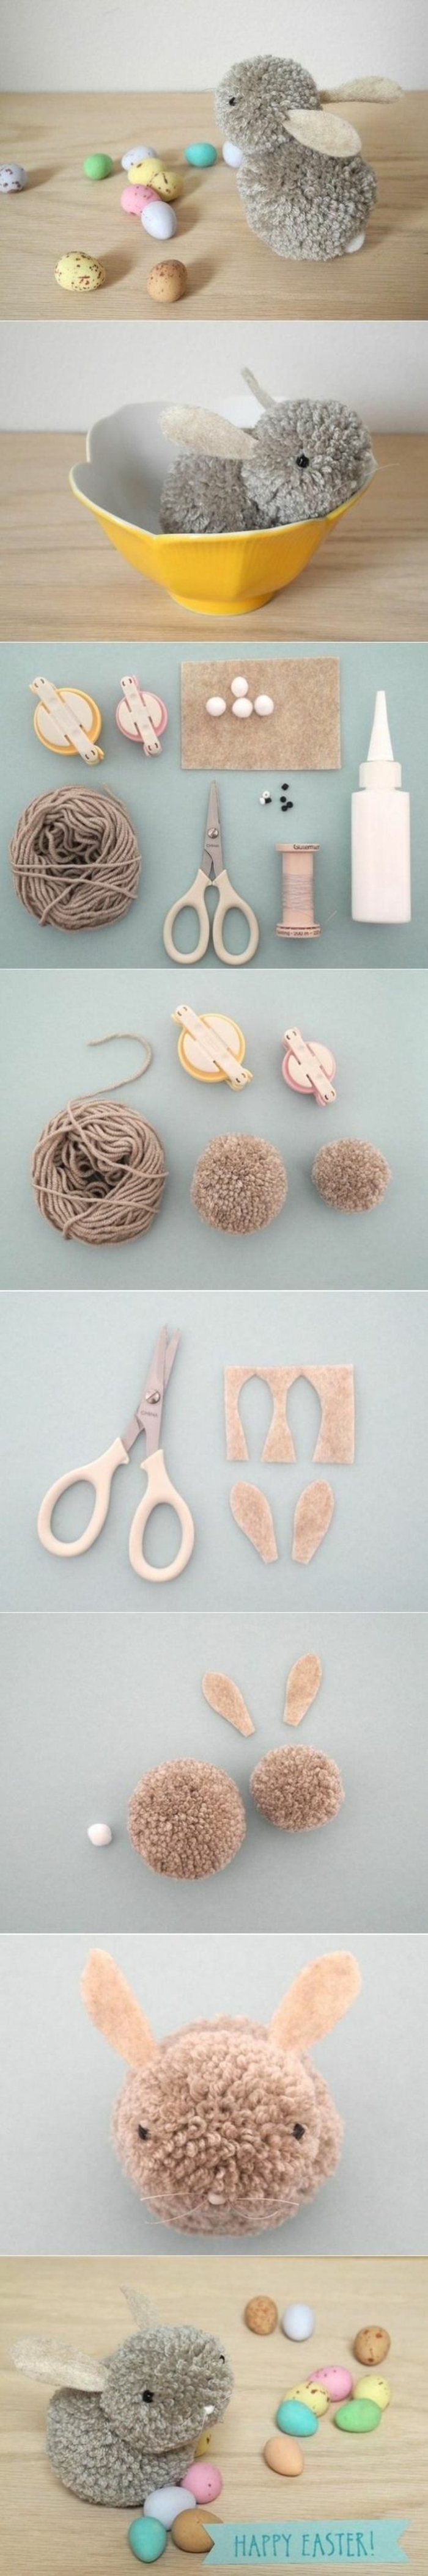 activité manuelle enfant, bricolage pâques facile, comment faire une figurine peluche pour Pâques avec pompons